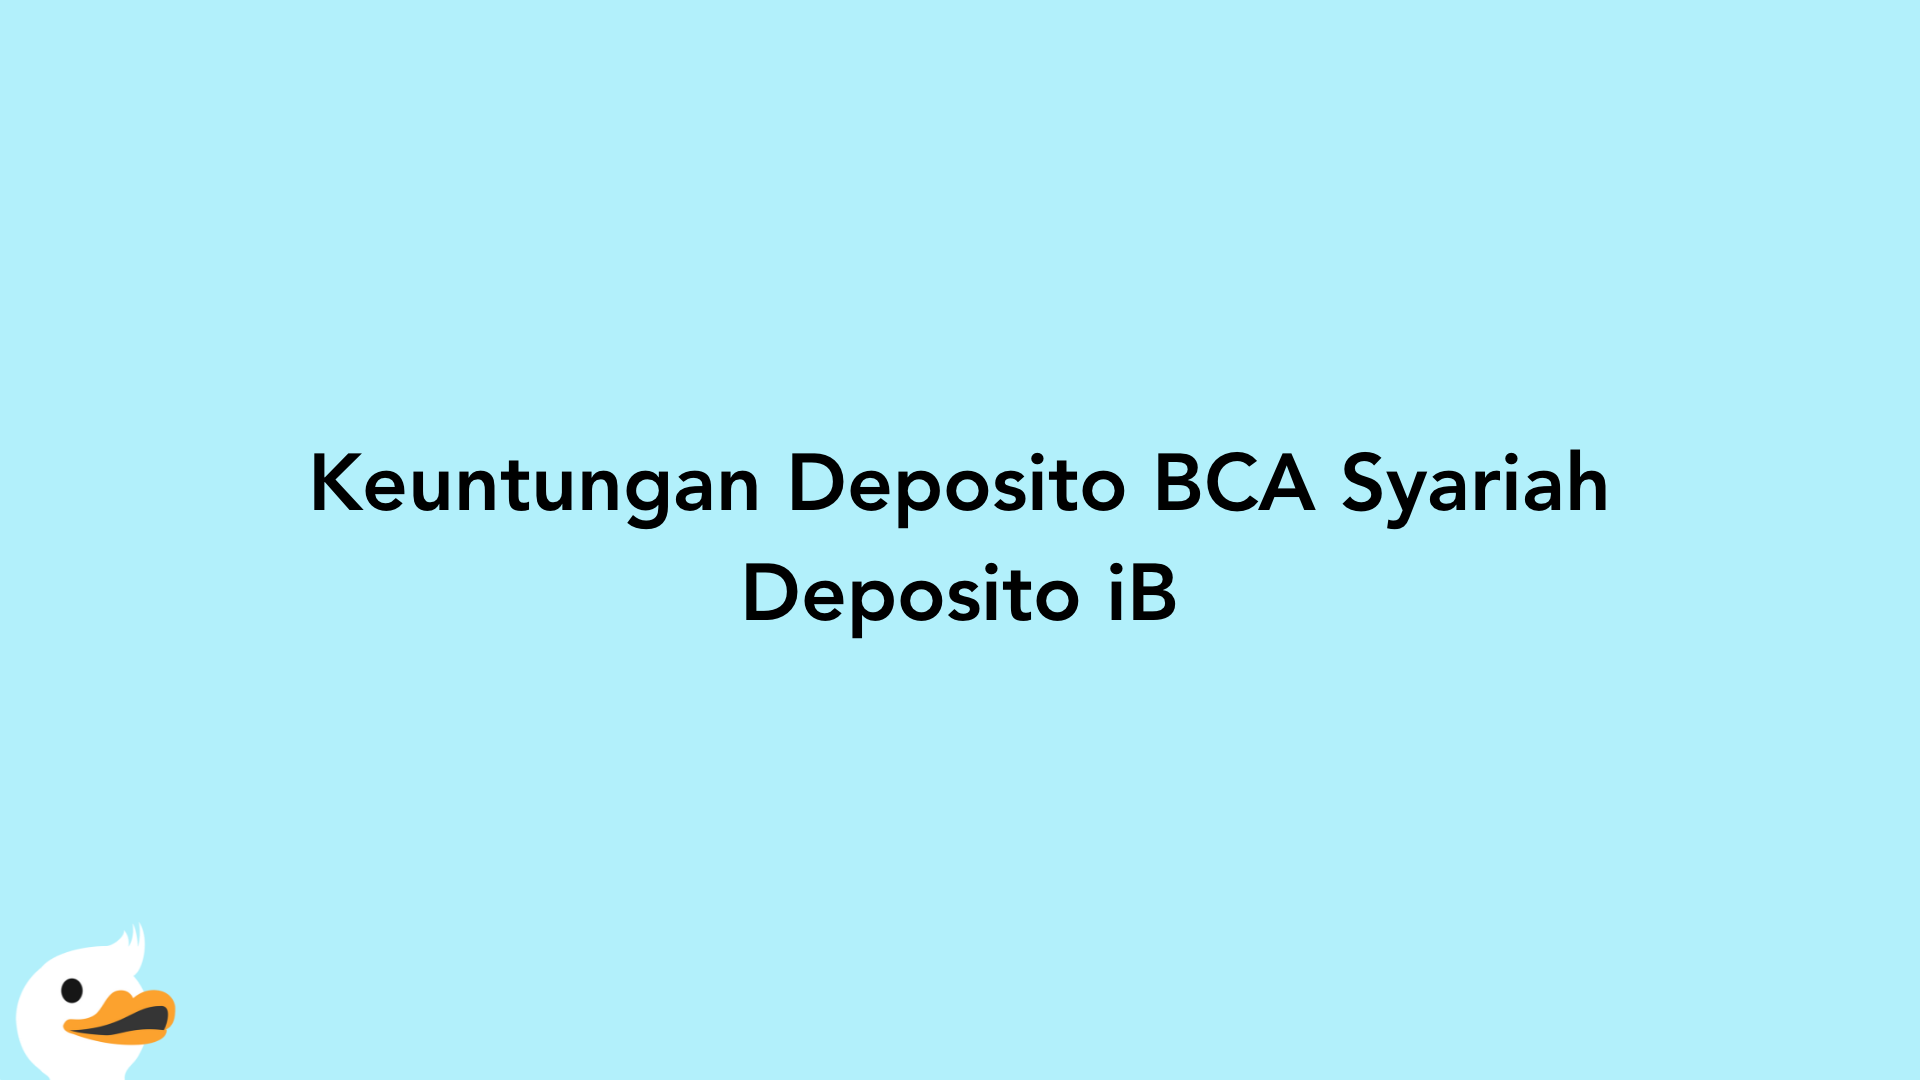 Keuntungan Deposito BCA Syariah Deposito iB